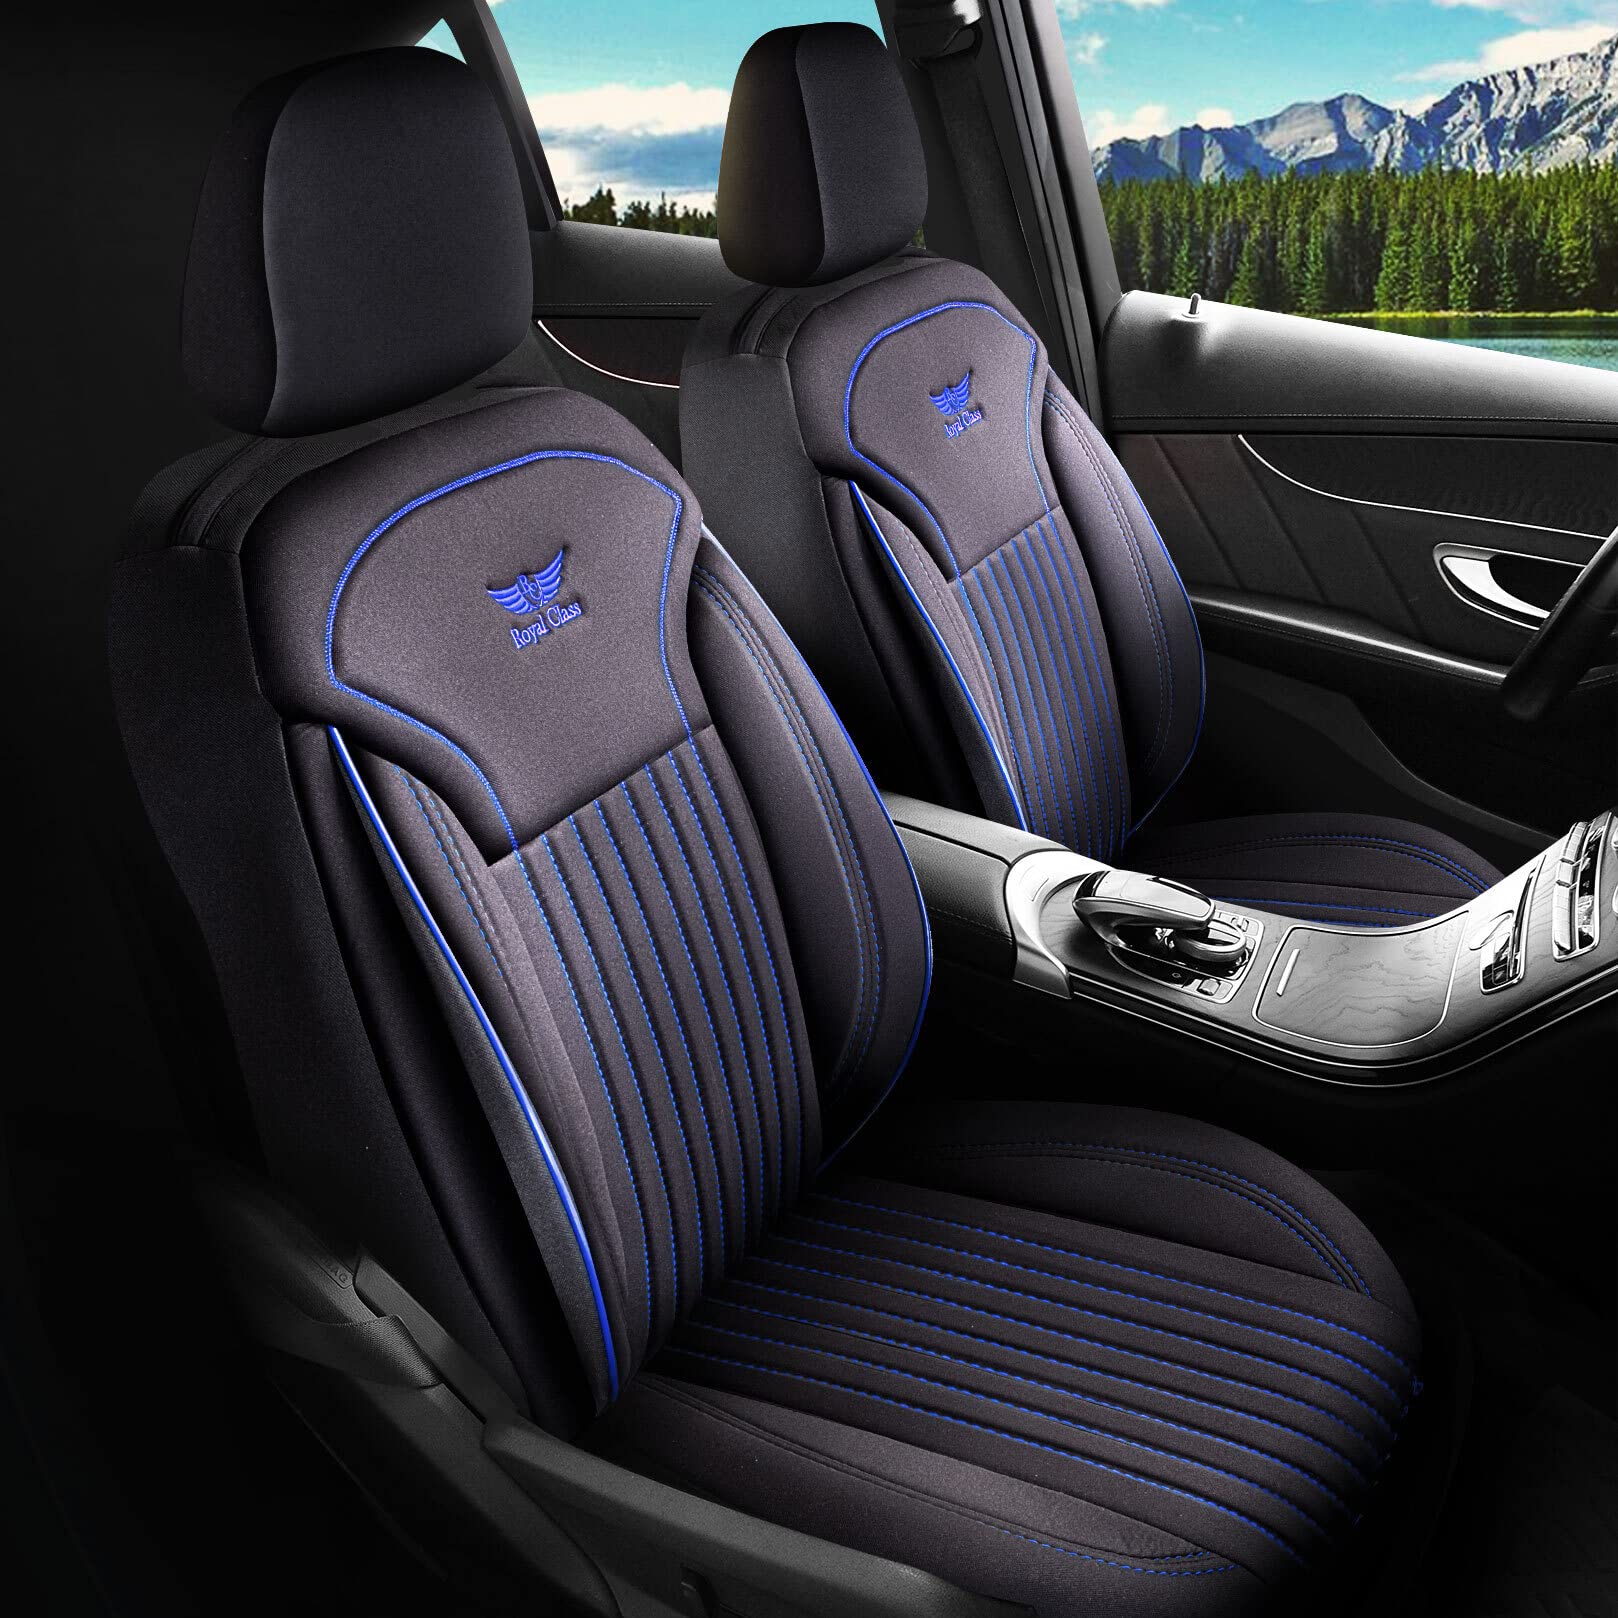 Royal Class Auto Sitzbezüge kompatibel für VW Crafter in Schwarz Blau Fahrer und Beifahrer, Autositzbezug Schonbezug Sitzbezug Auto Komplettset 2-Sitze von RC Royal Class